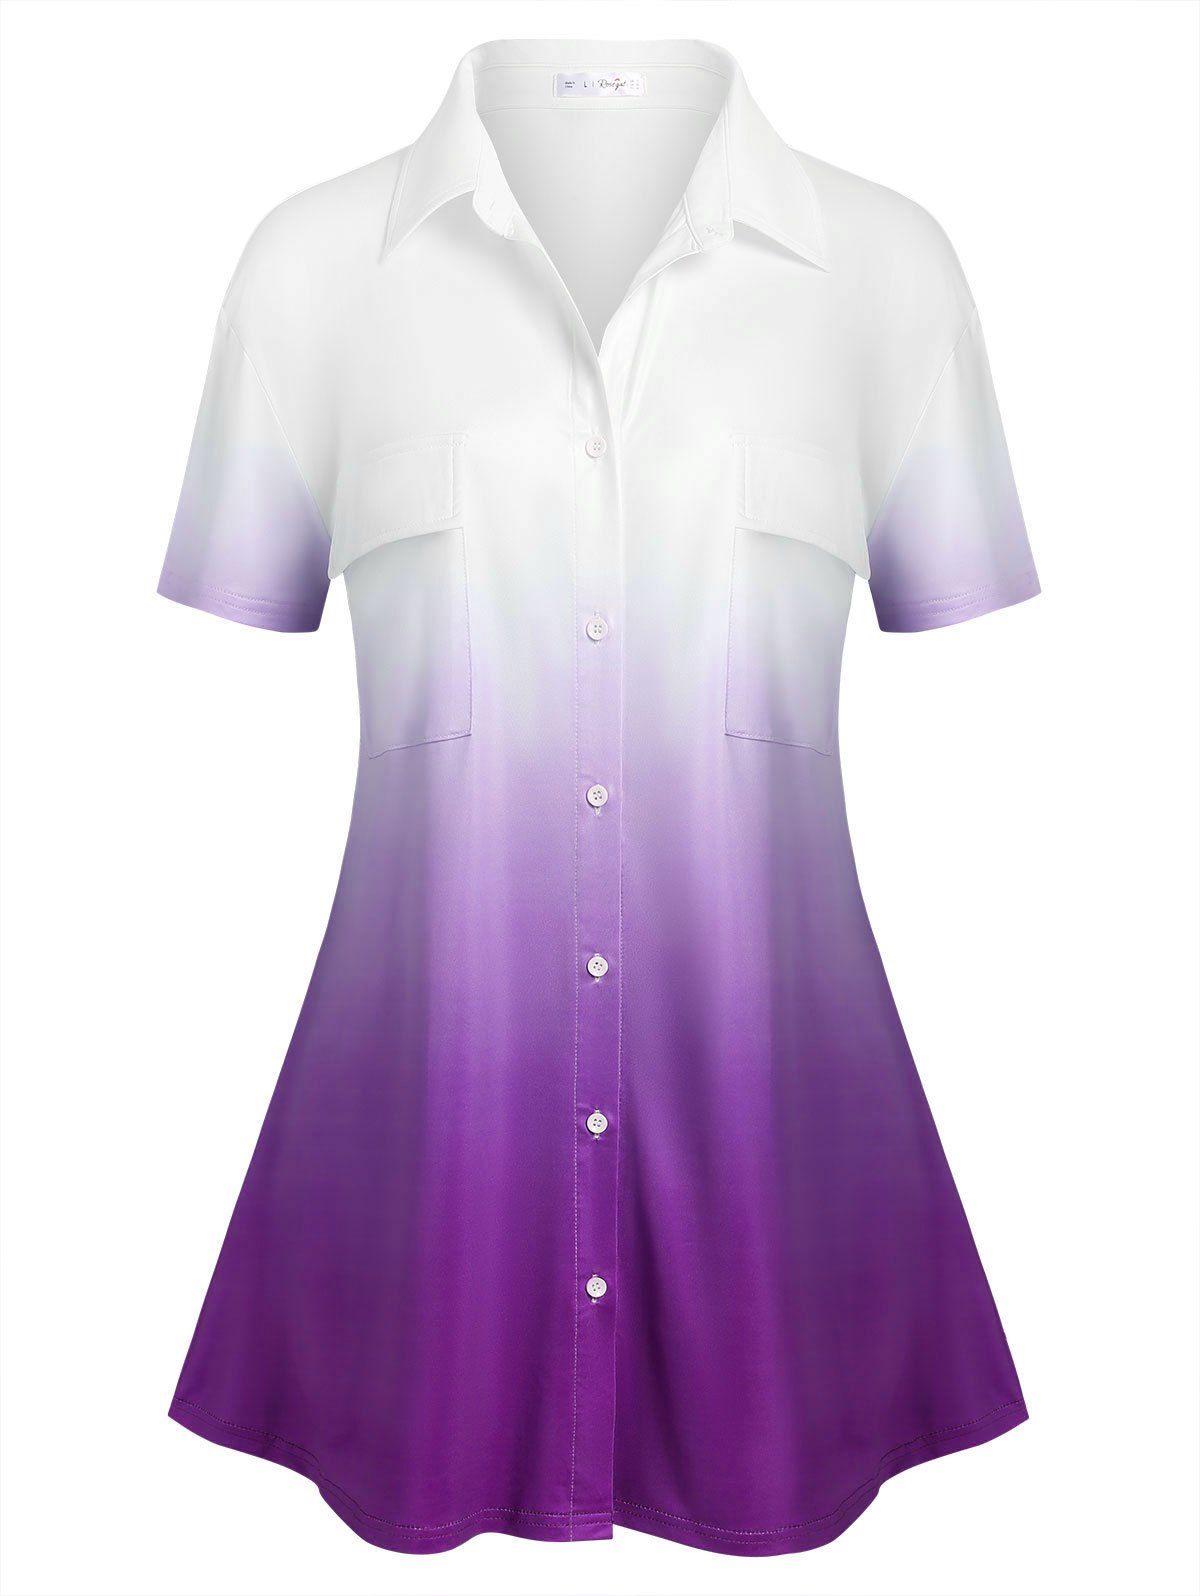 Plus Size Pockets Ombre Color Shirt - LIGHT PURPLE 5X